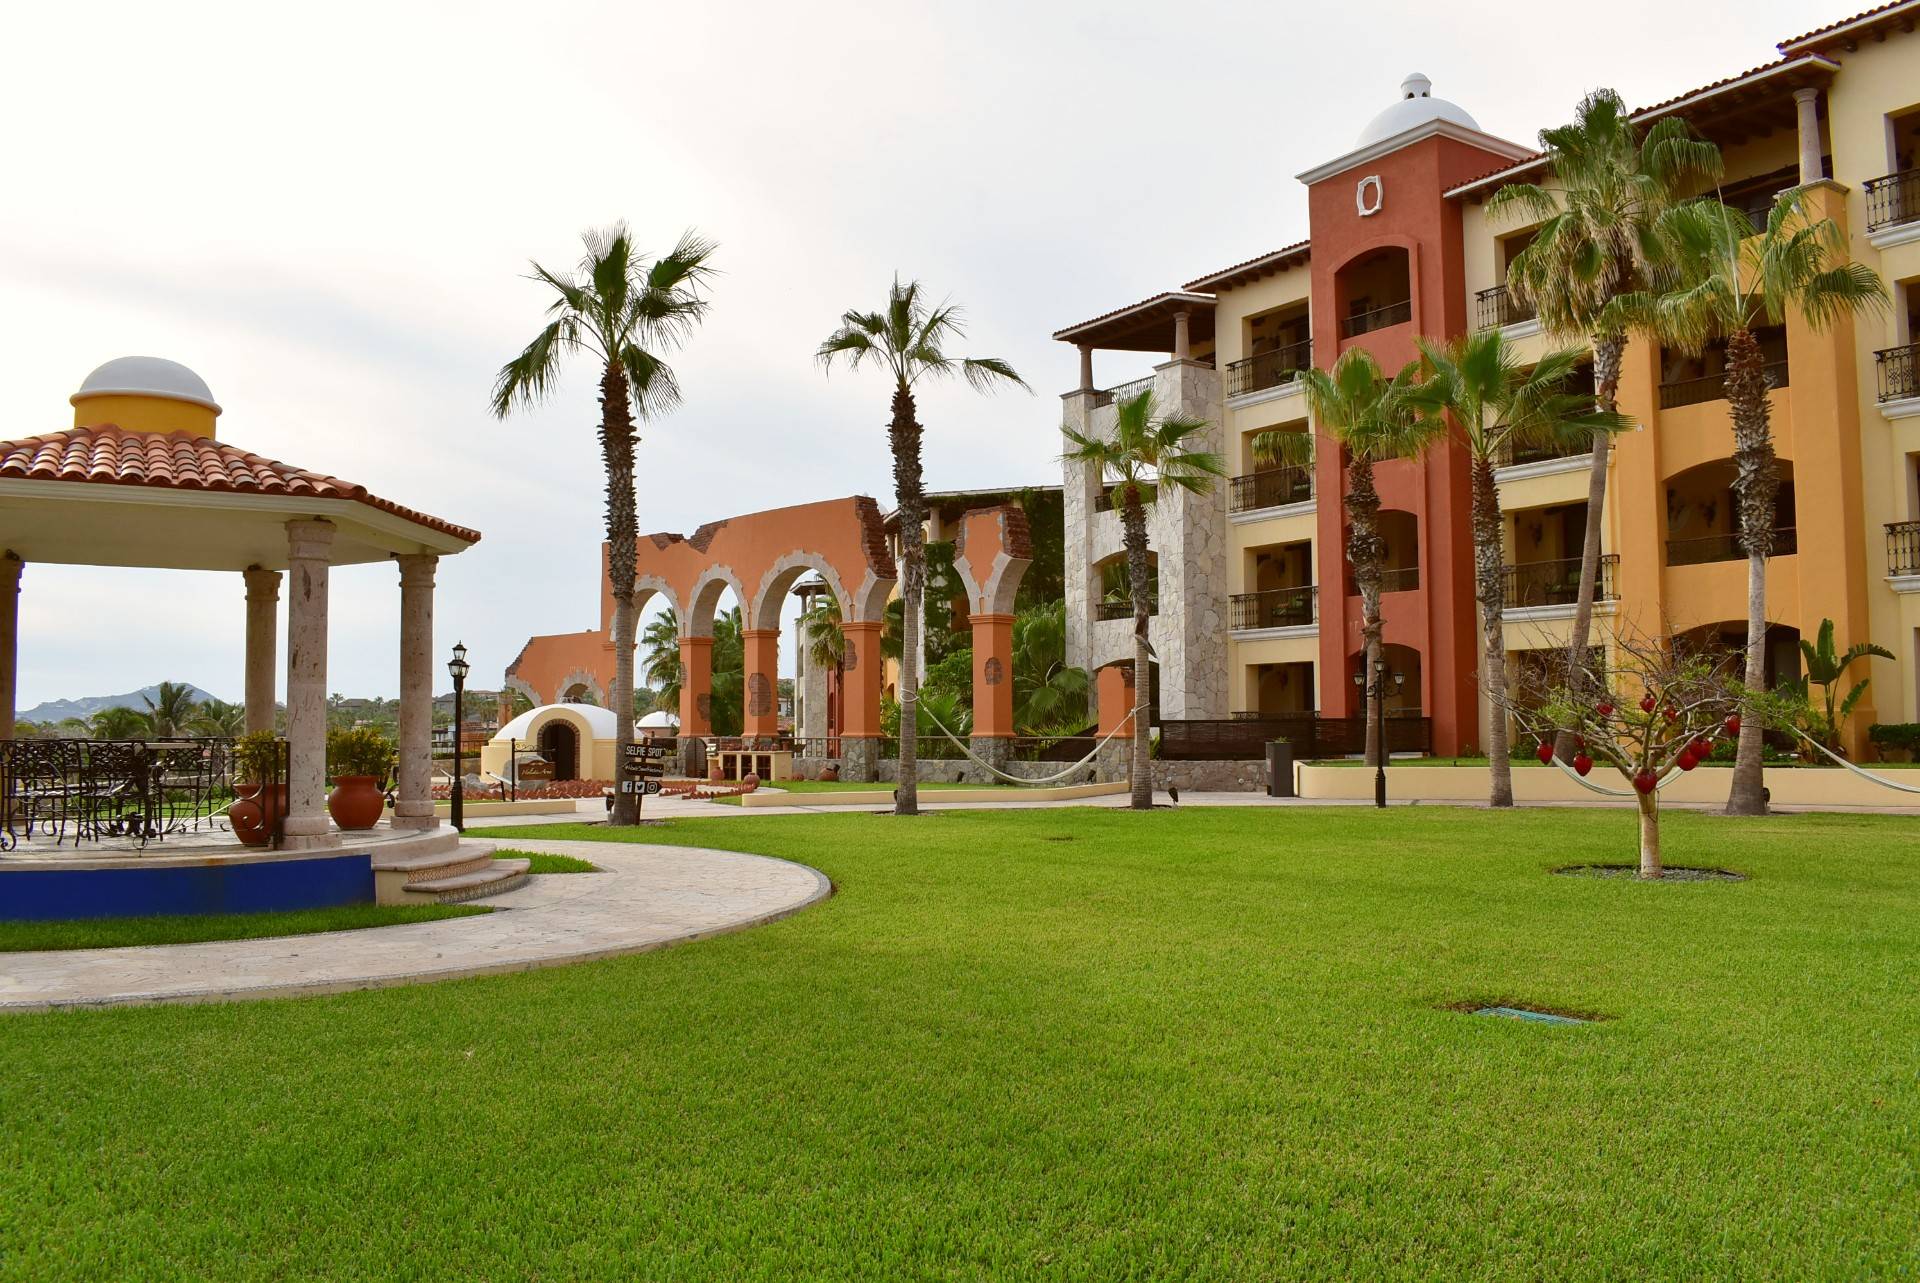 Hacienda ENcantada resort